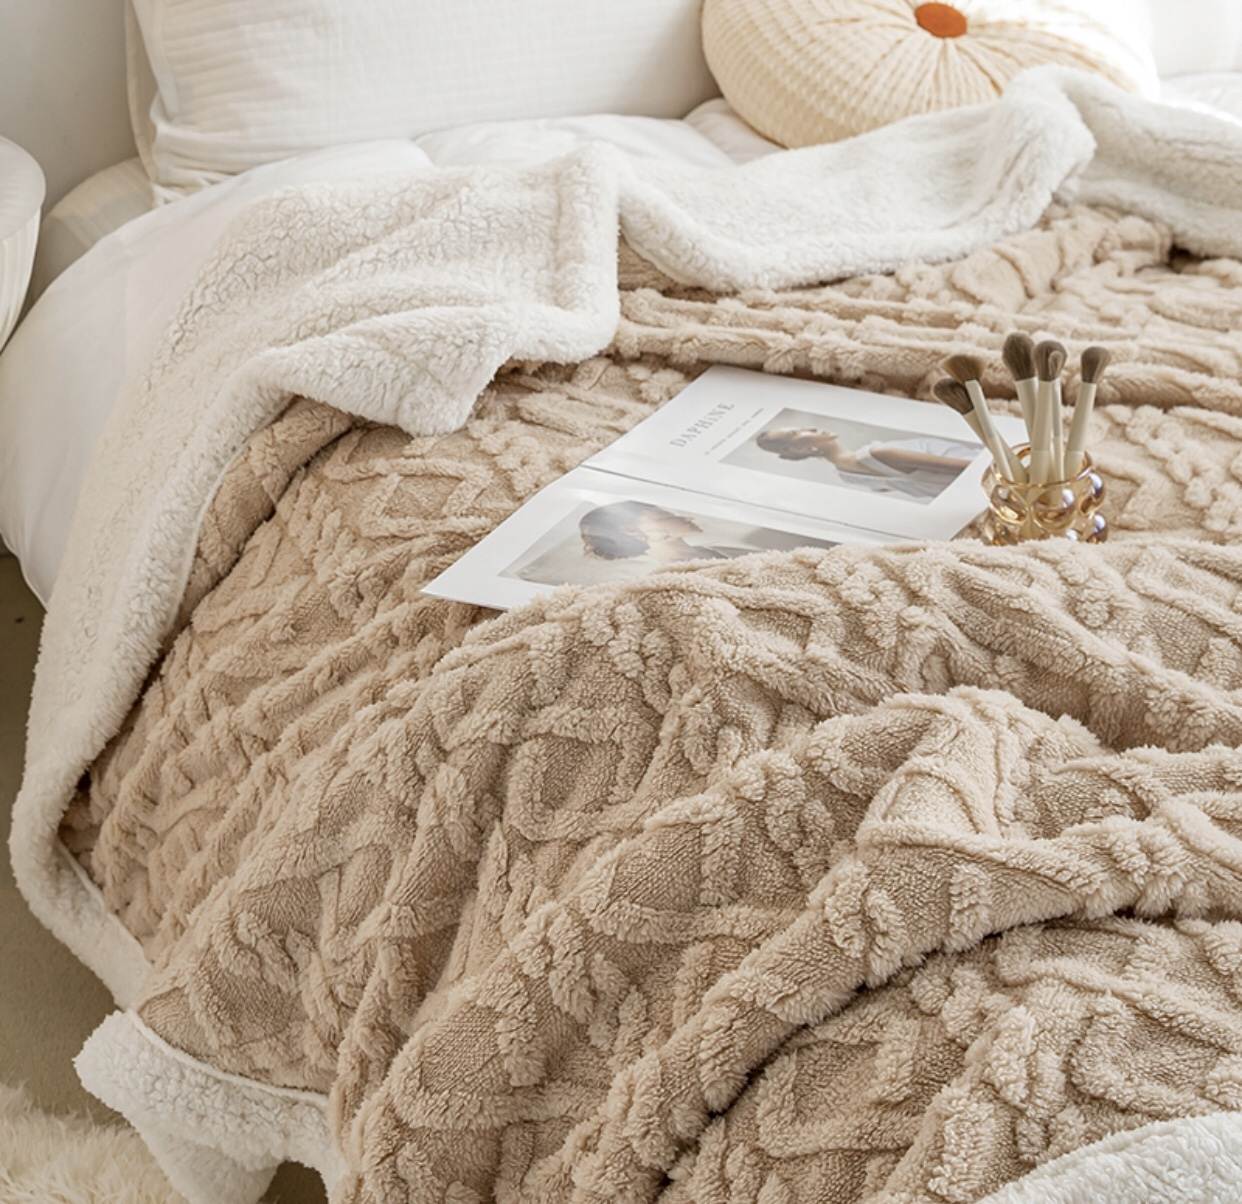 柔軟絨毯 午睡舒適 厚暖冬被 兩面絨毛 溫暖披肩